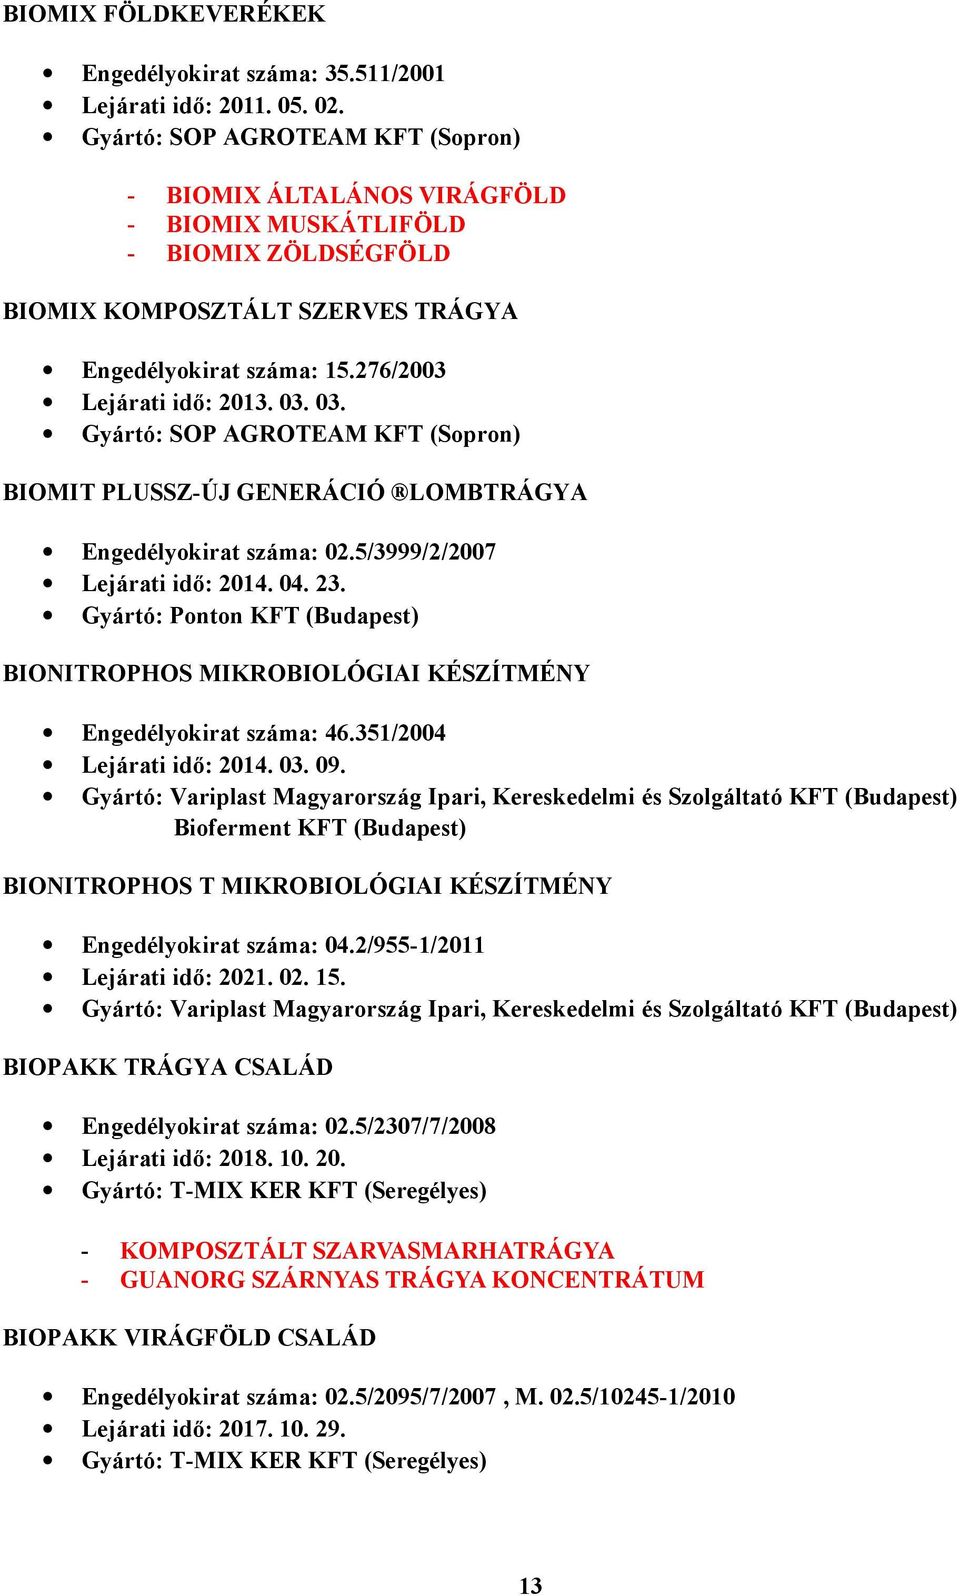 ENGEDÉLYEZETT TERMÉSNÖVELŐ ANYAGOK (2011. ÁPRILIS 30-IKI ÁLLAPOT) - PDF  Free Download